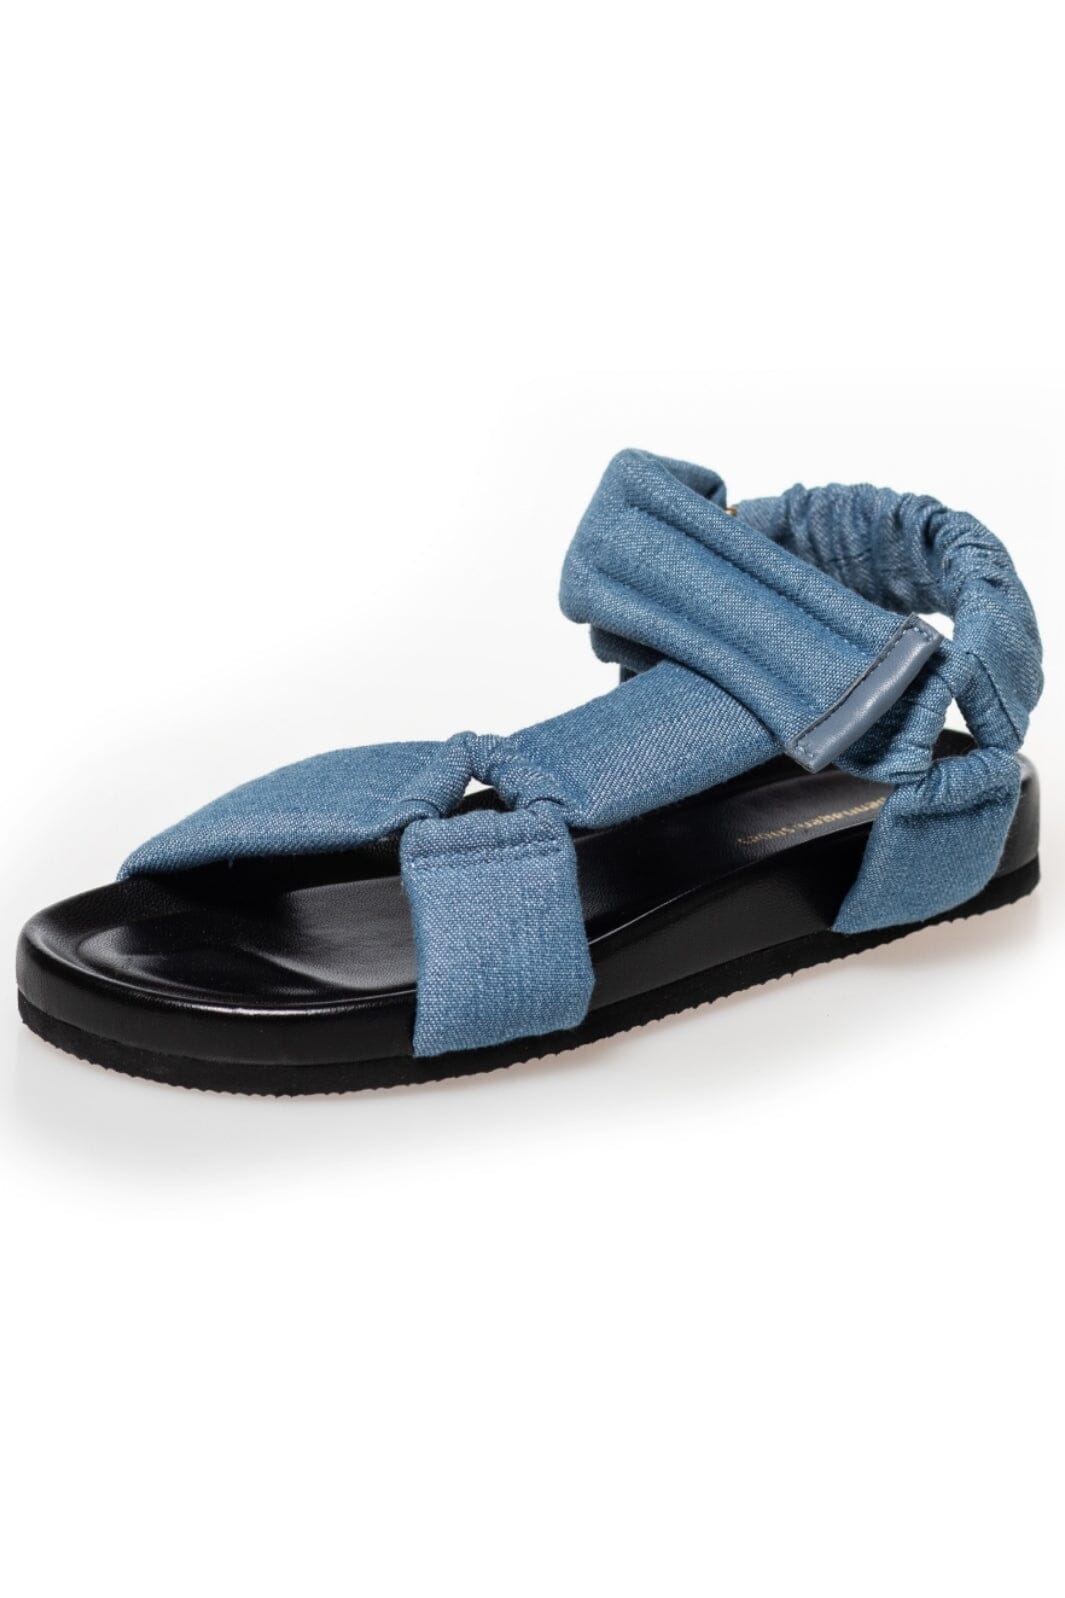 Copenhagen Shoes - Copenhagen Summer Denim - 456 Light Blue Sandaler 